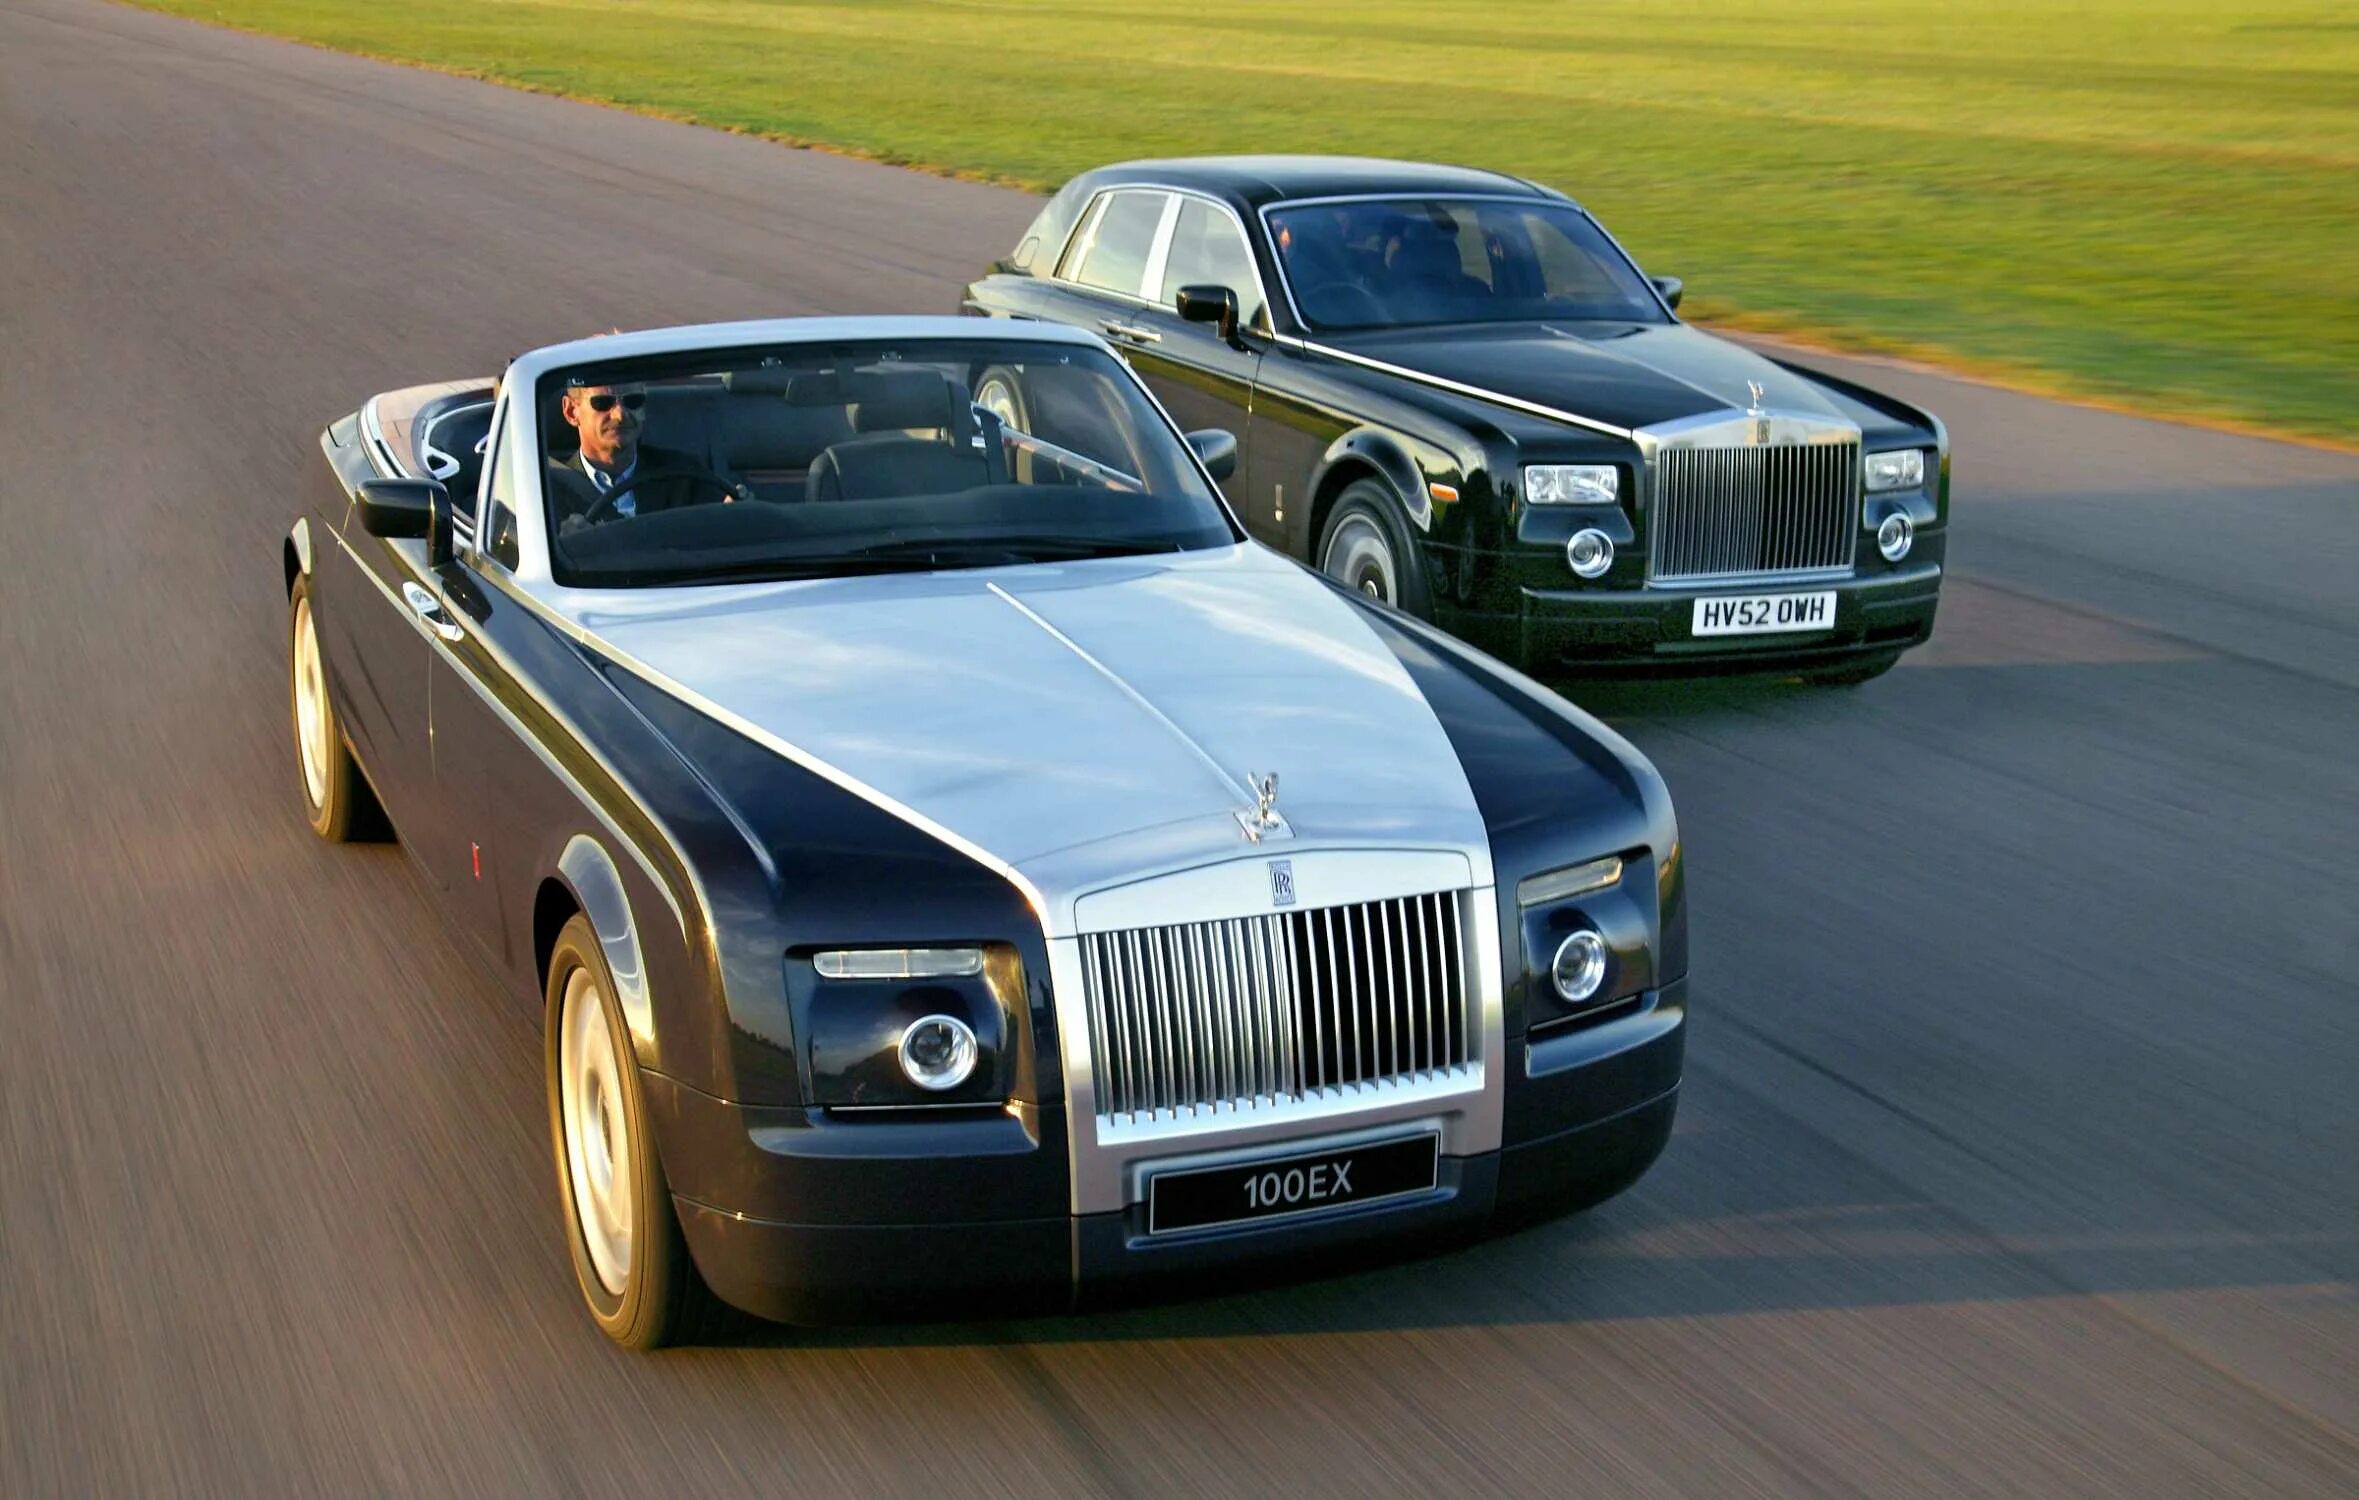 Англия какие машины. Rolls-Royce 100ex. Rolls Royce 100ex Centenary. Rolls-Royce 100ex Centenary 2004. Роллс-Ройс 100ex 2004.